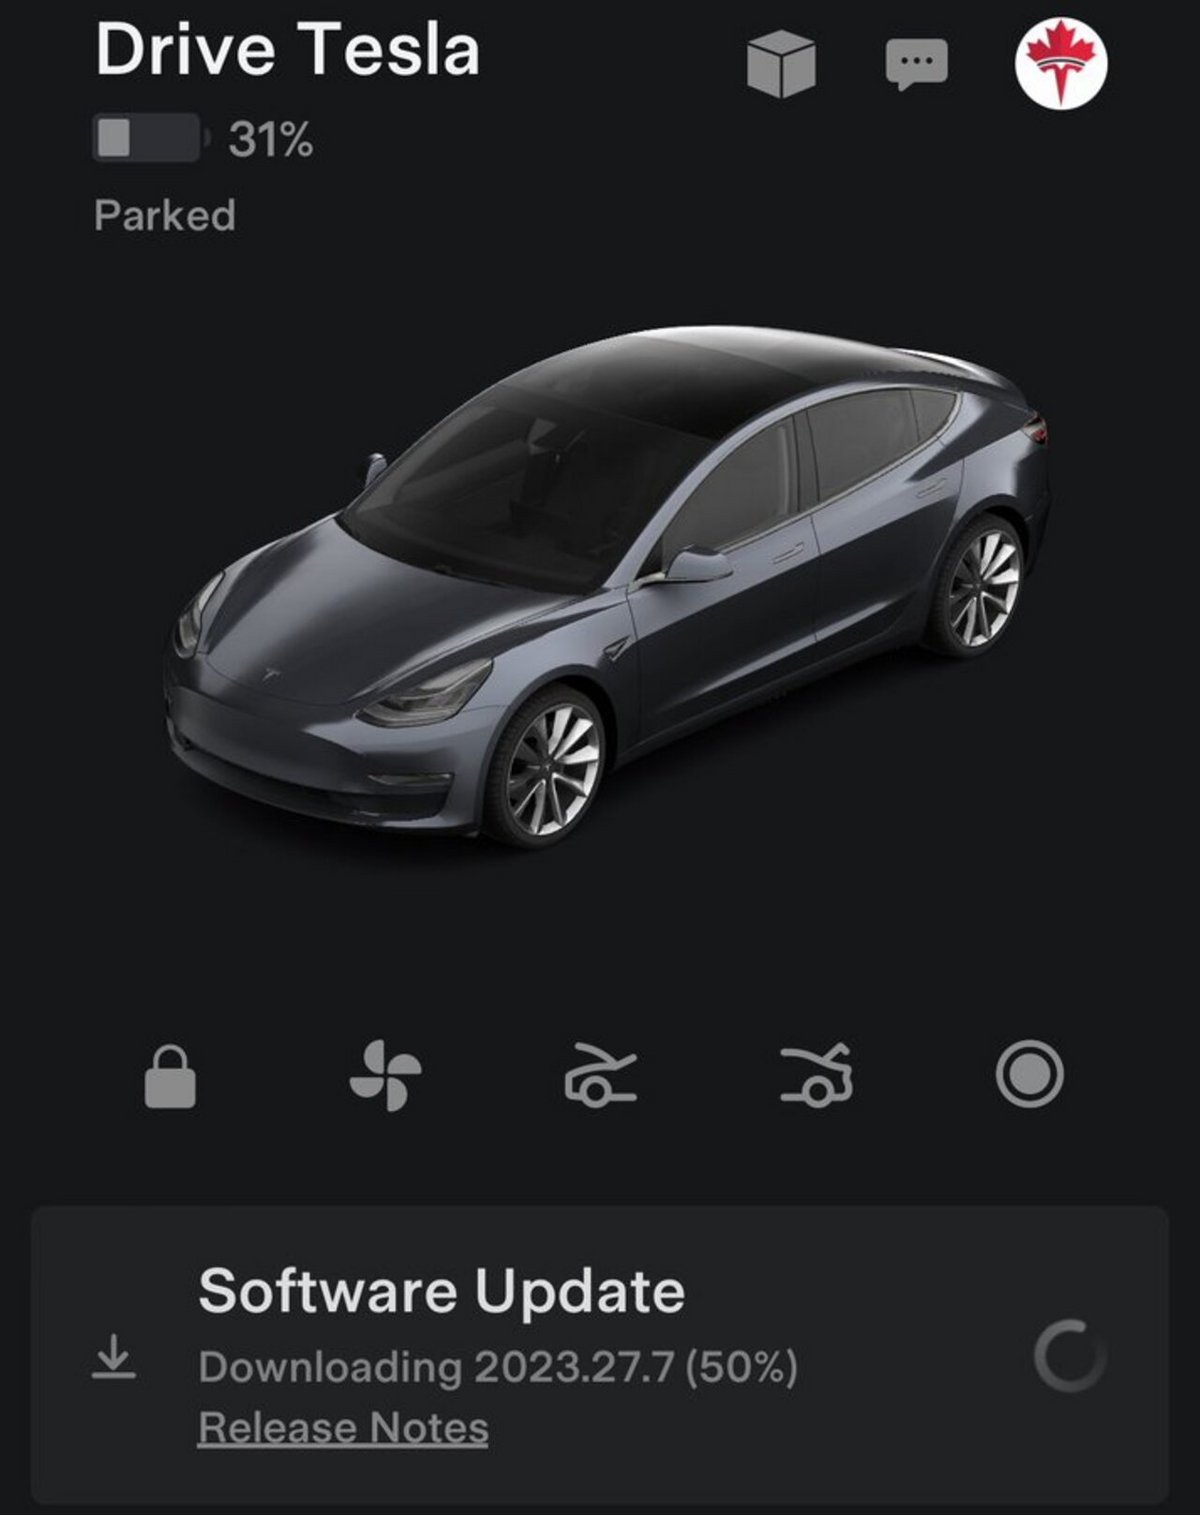 Une Tesla qui se met à la version 2023.27.7 © DriveTeslaca sur X.com